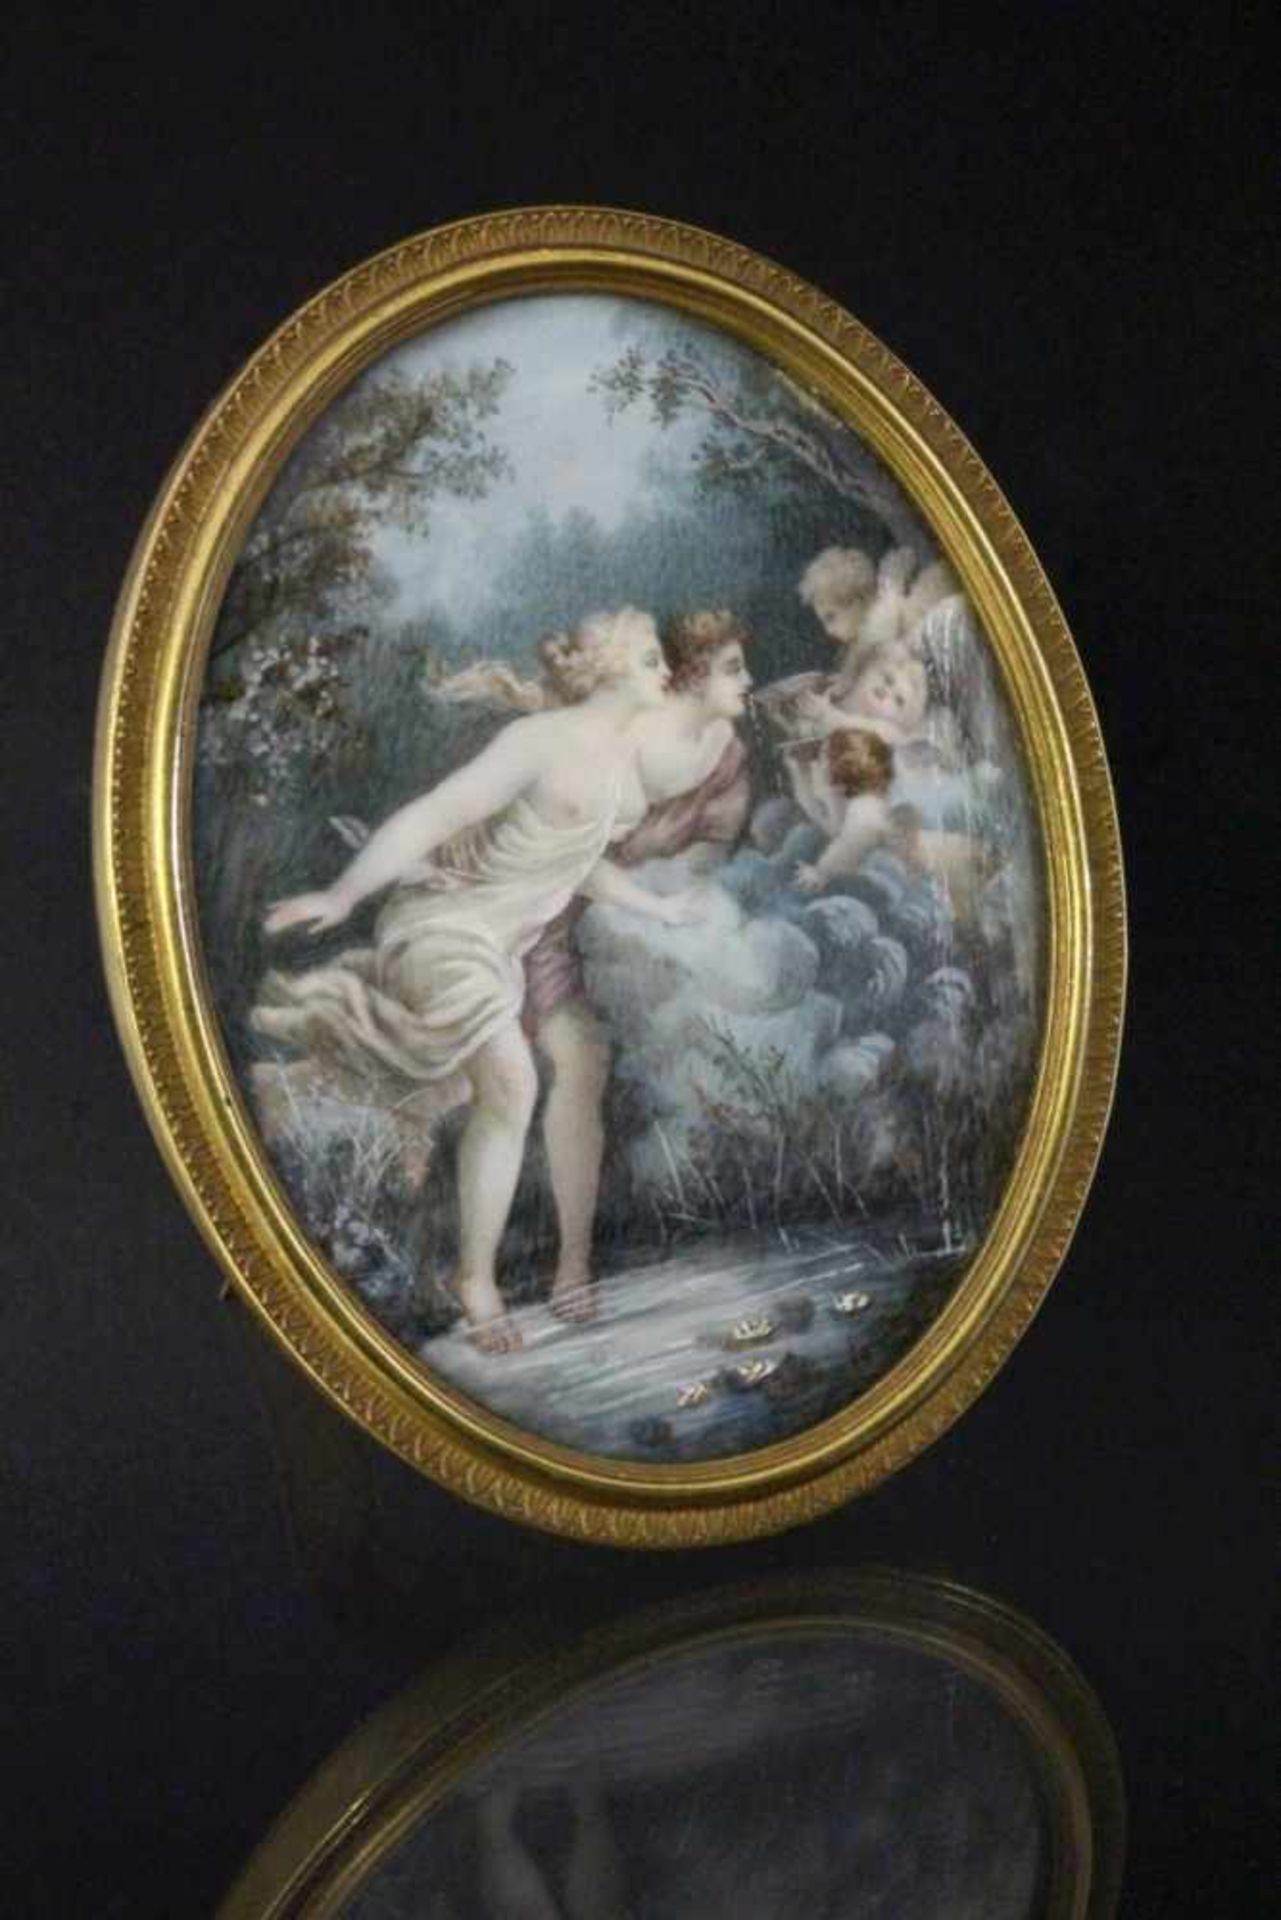 MINIATUR wohl Frankreich, 19.Jh. Venus und Adonis an einer Quelle mit Amoretten. Gouache auf